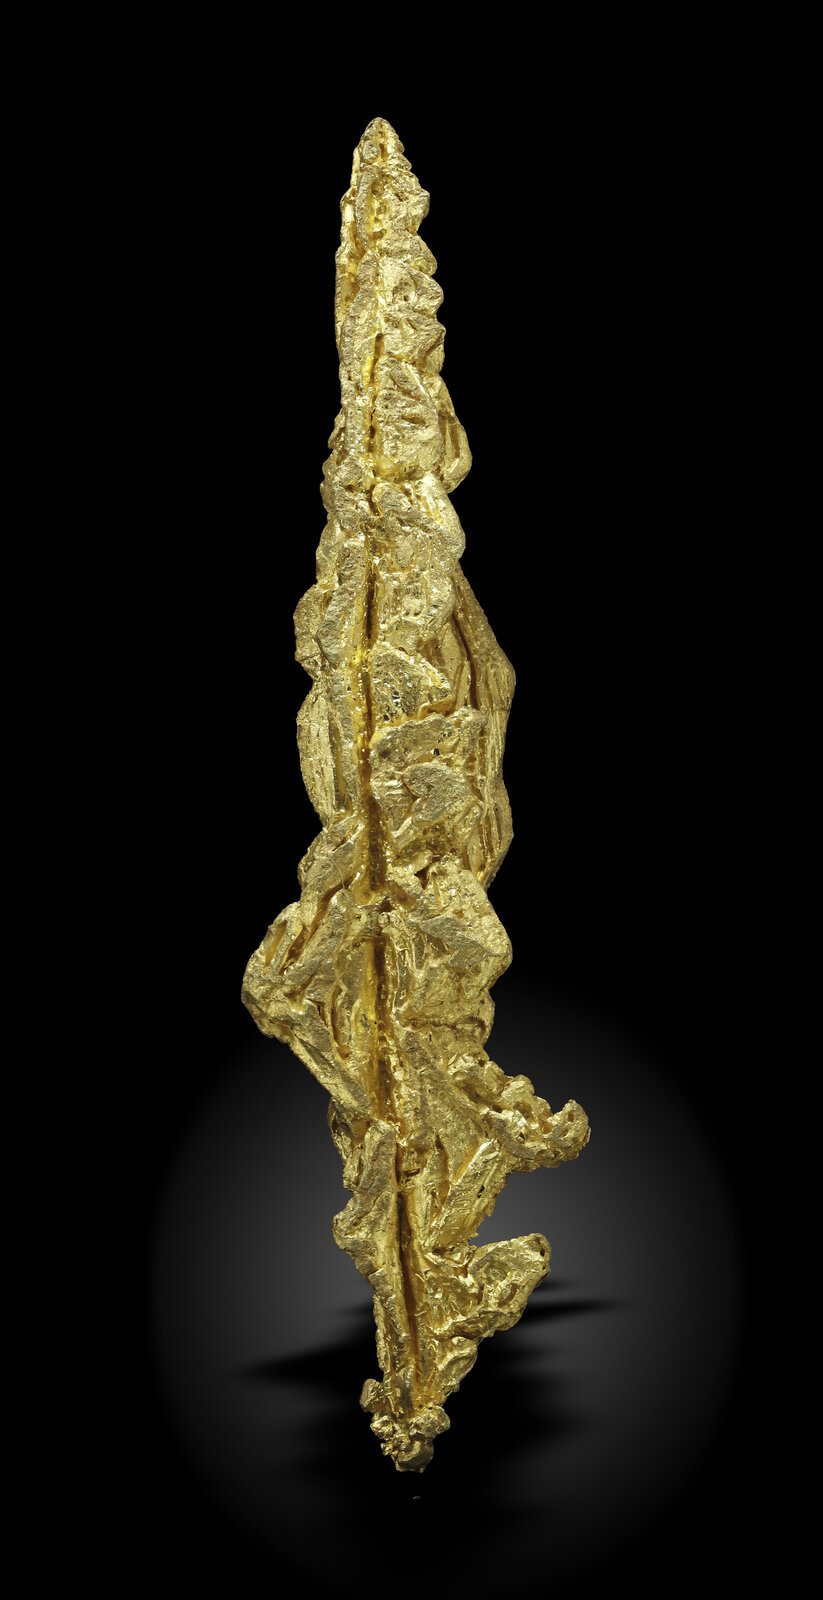 specimens/s_imagesAN2/Gold-TC62AN2_4929_f.jpg